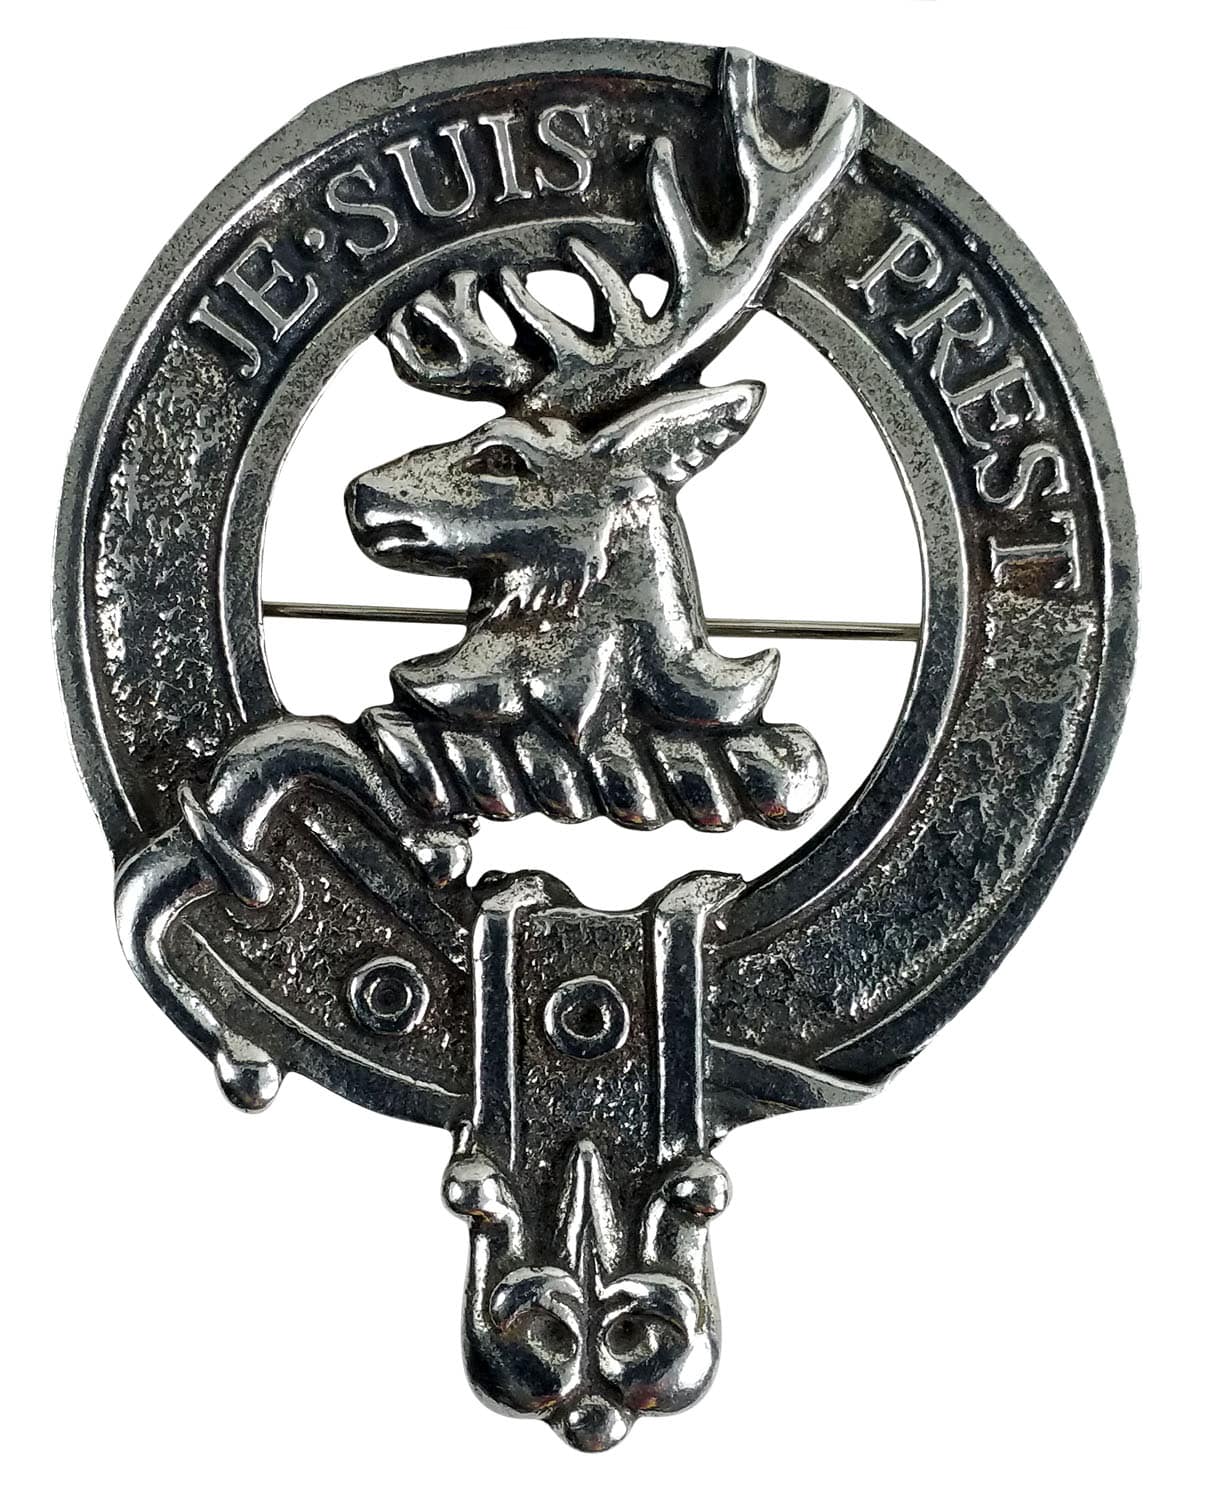 Buchanan Scottish Clan Crest Pewter Badge or Kilt Pin 